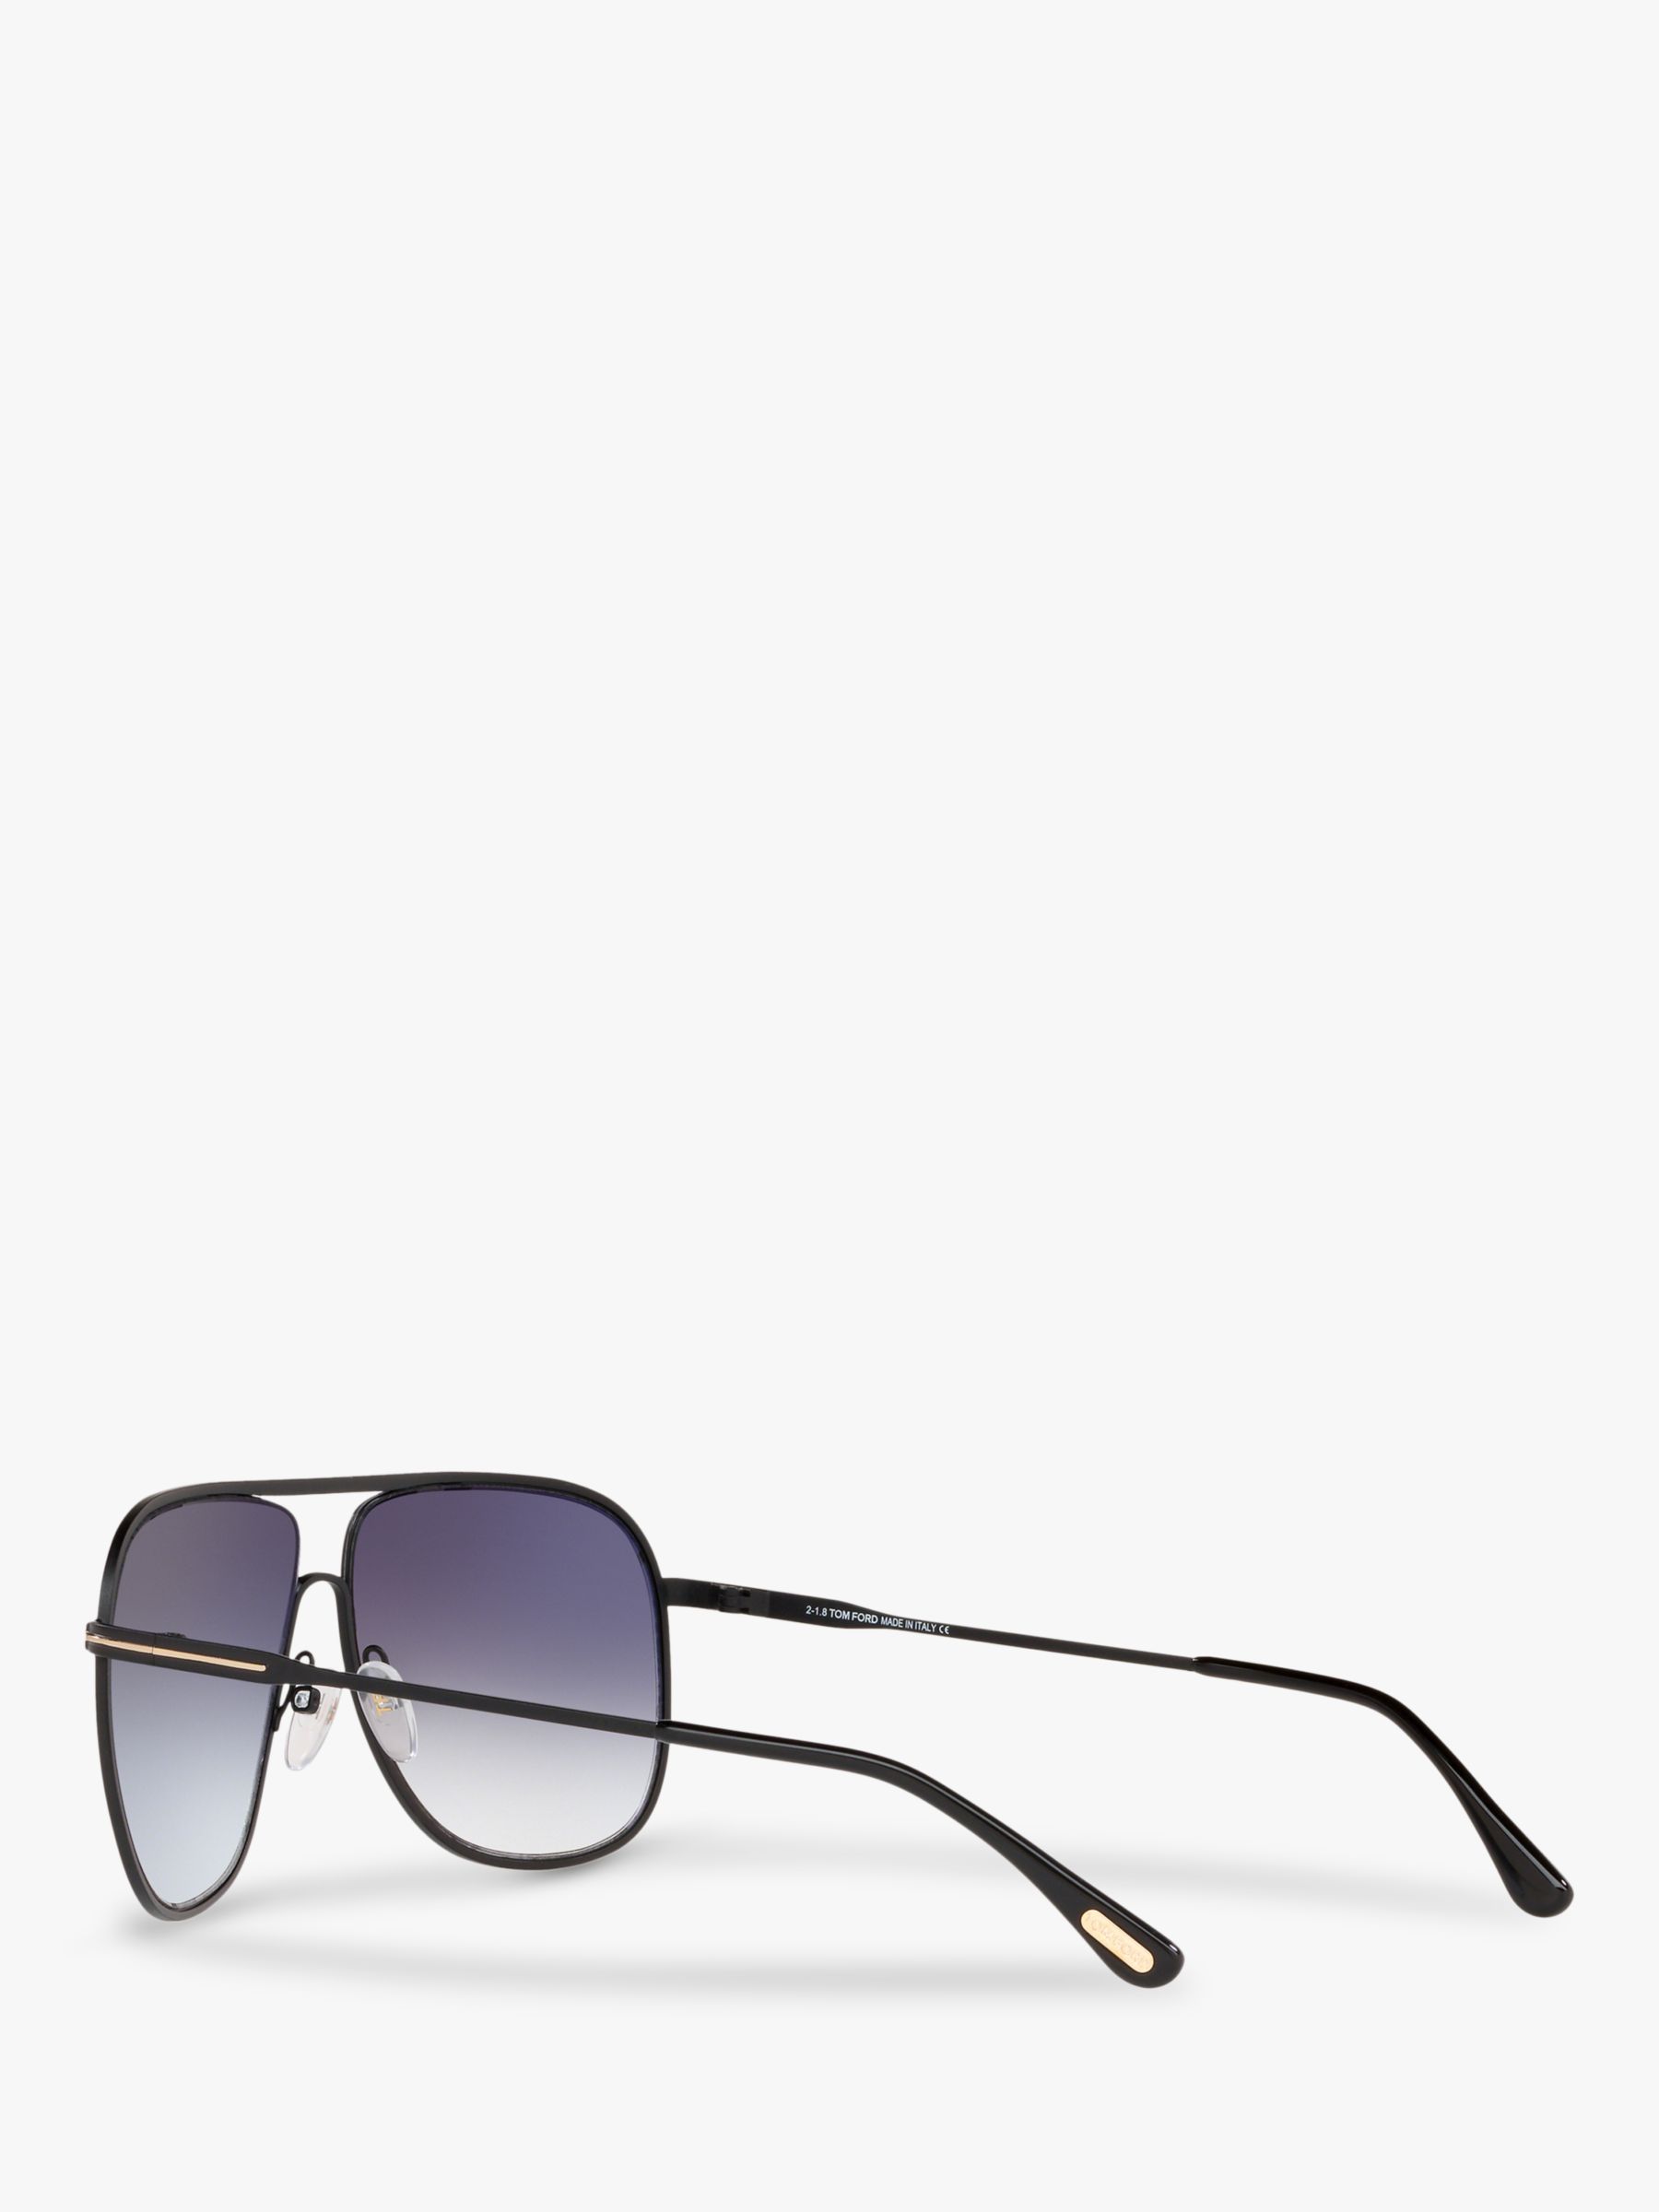 TOM FORD FT0451 Men's Dominic Aviator Sunglasses, Matte Black/Grey Gradient